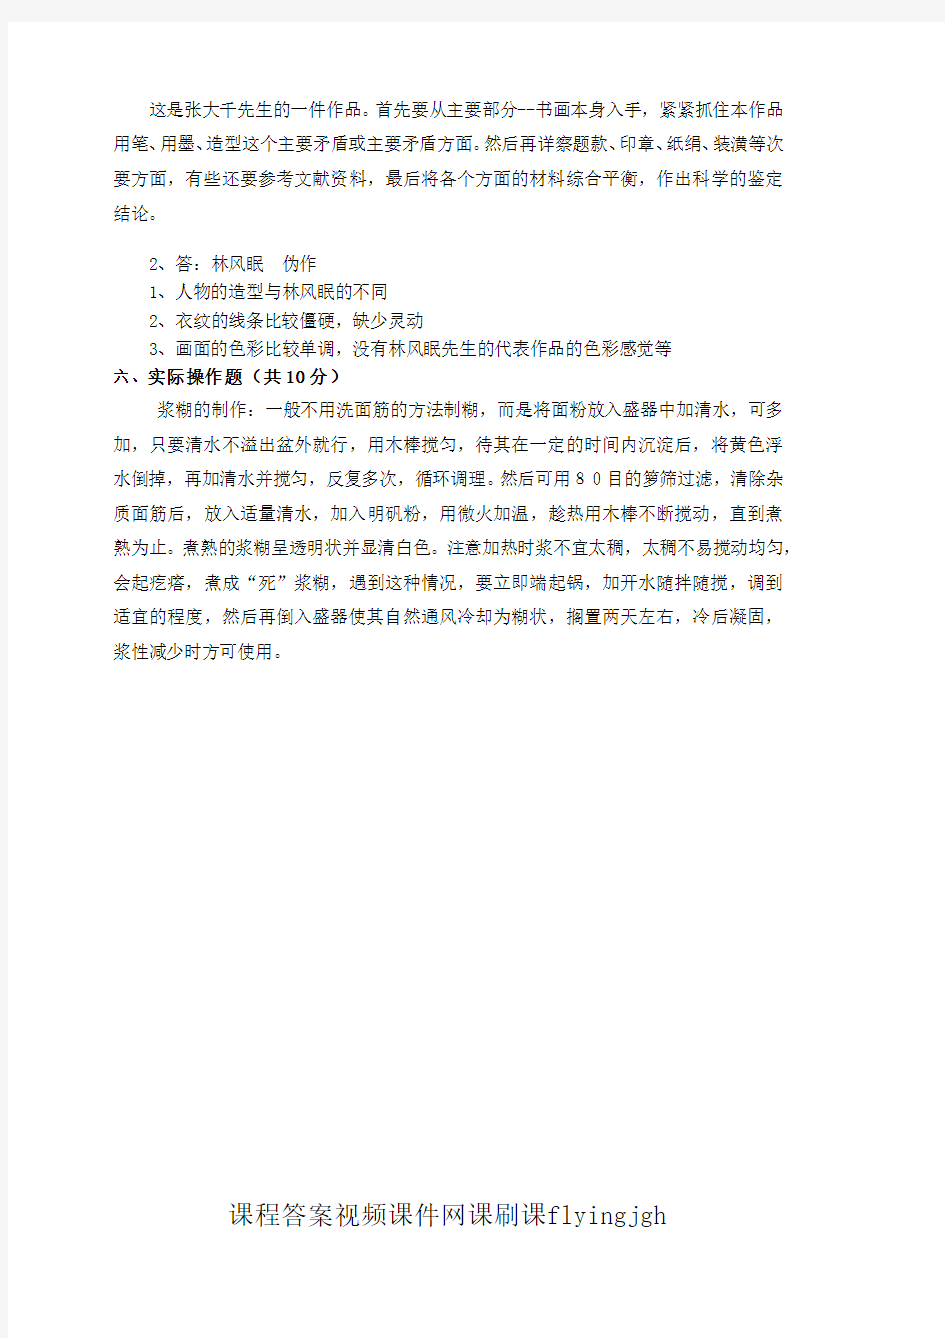 中国大学MOOC慕课爱课程(14)--《书画品鉴与装裱技术》期末考试卷第3套答案网课刷课